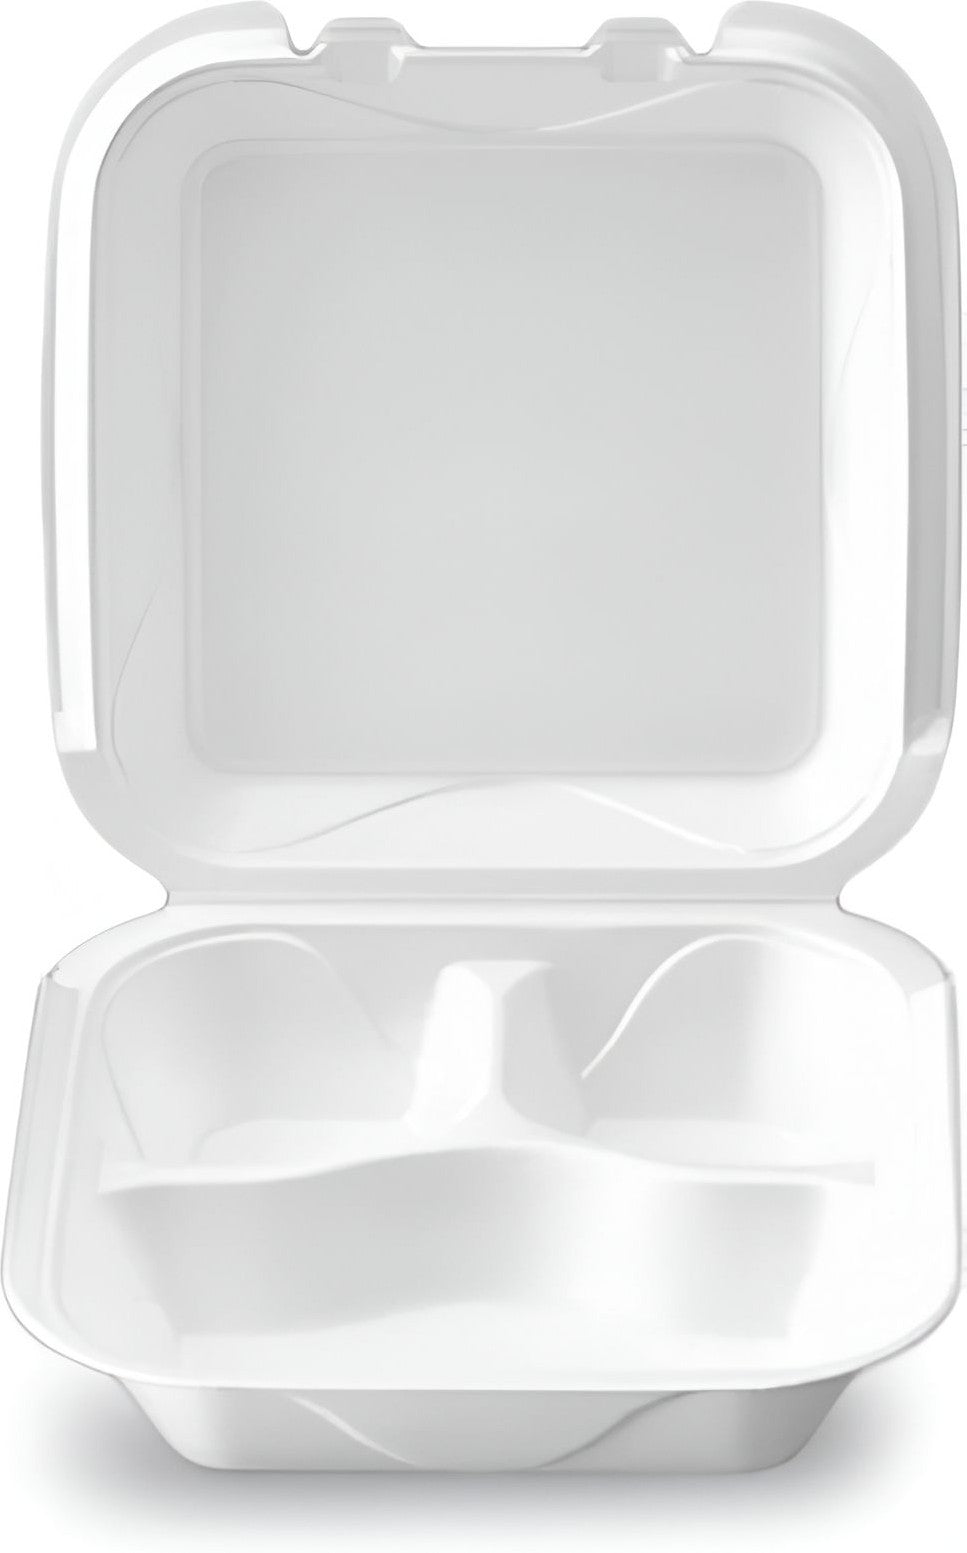 Darnel - 8.4" x 8.4" x 2.8" White Medium Foam 3 Compartment Hinged Container, 200/Cs - DU4053101